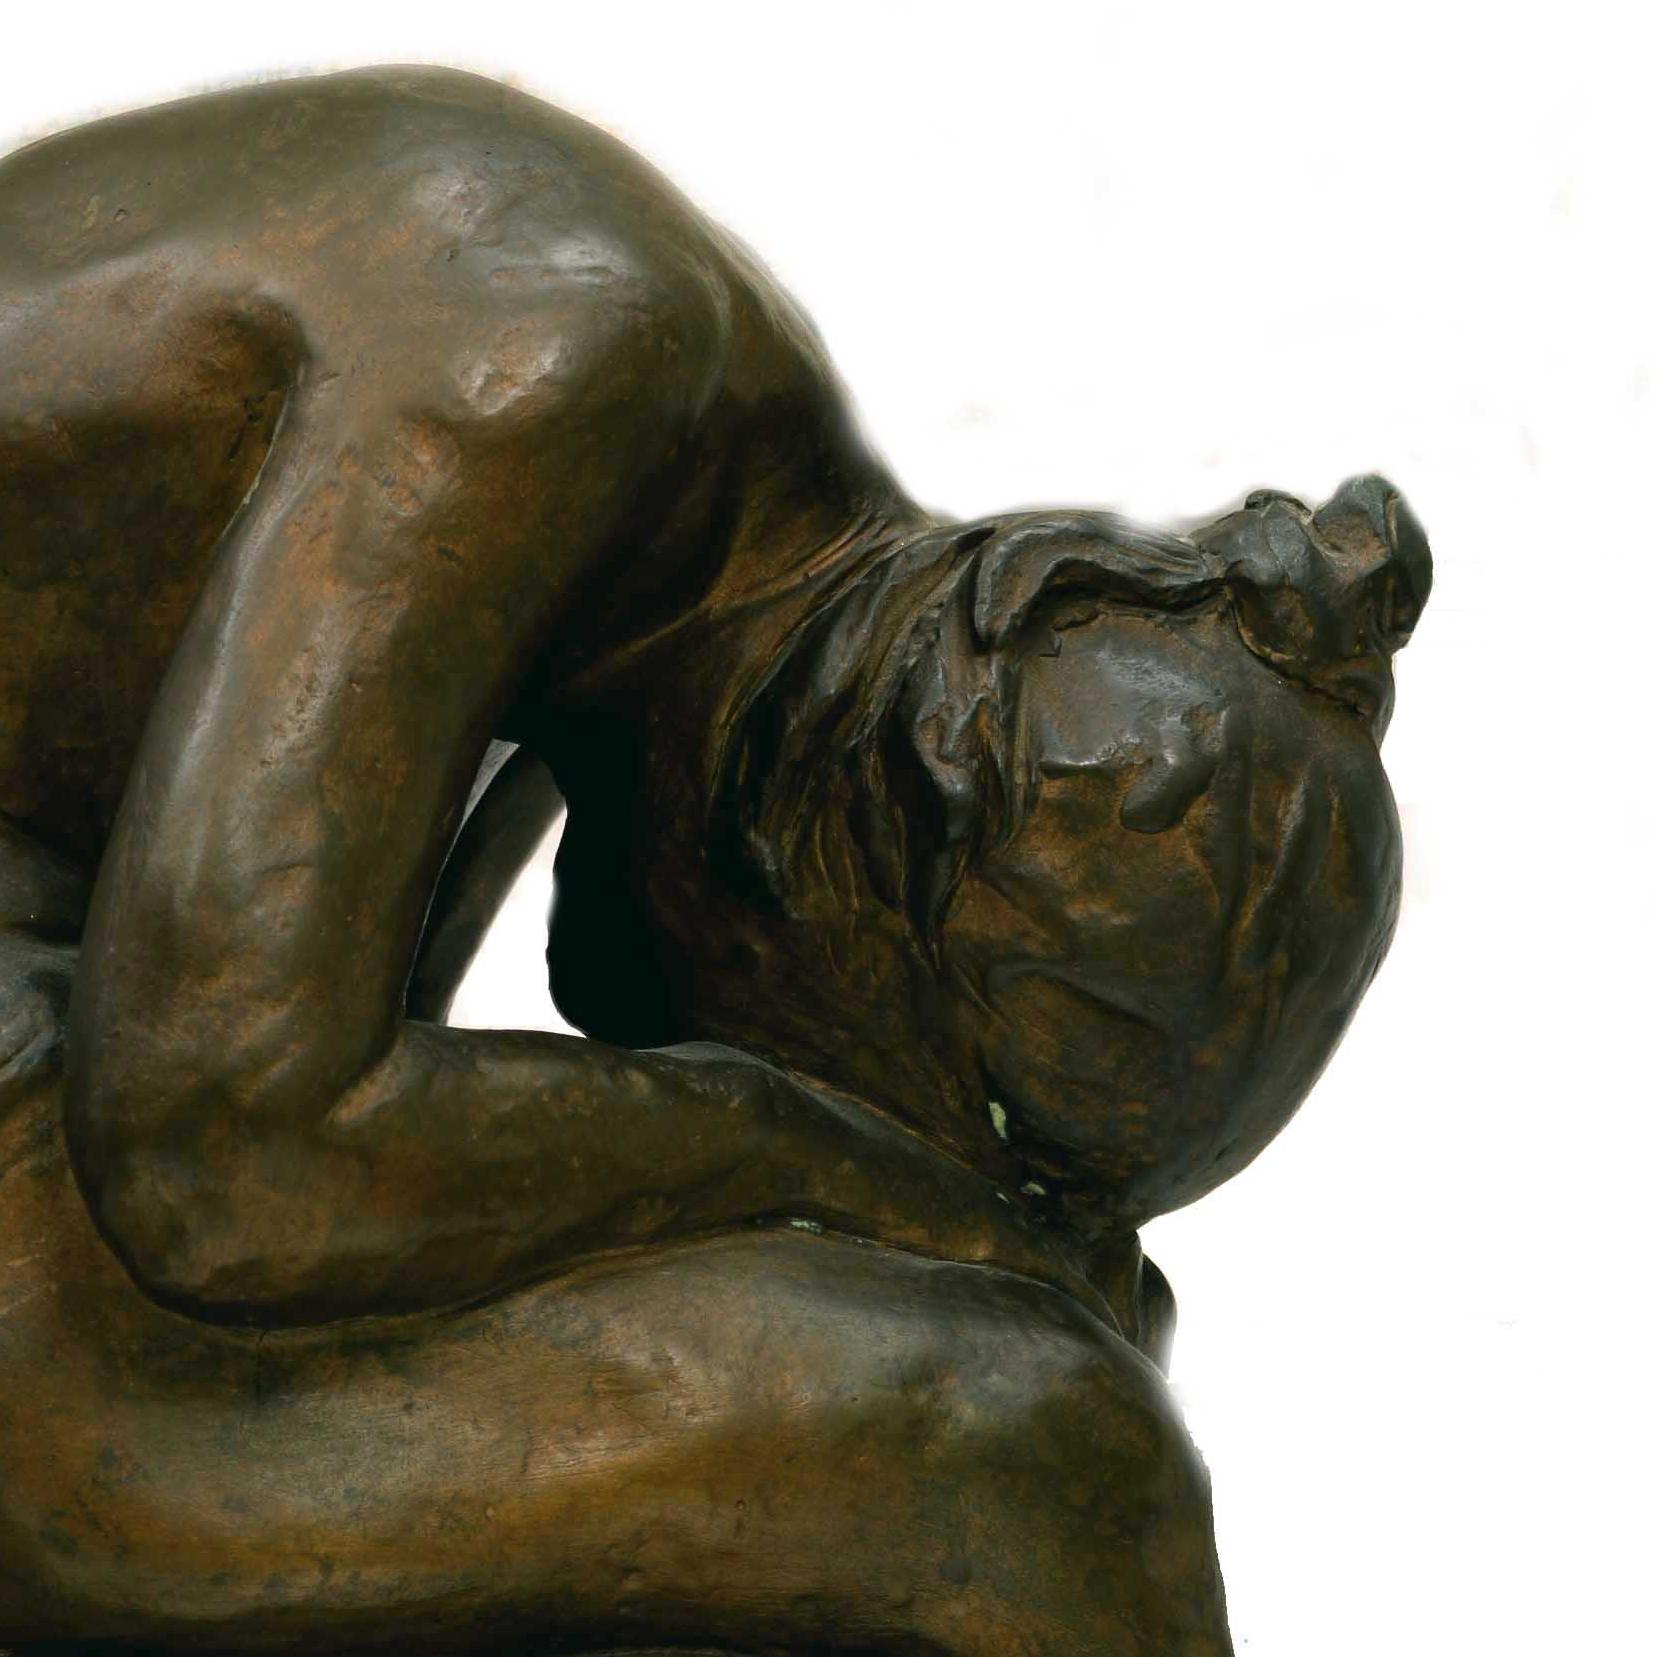 BALLERINA - Bronze Sculpture by Giggiano Borriello - Gold Figurative Sculpture by V. Giggiano Borriello